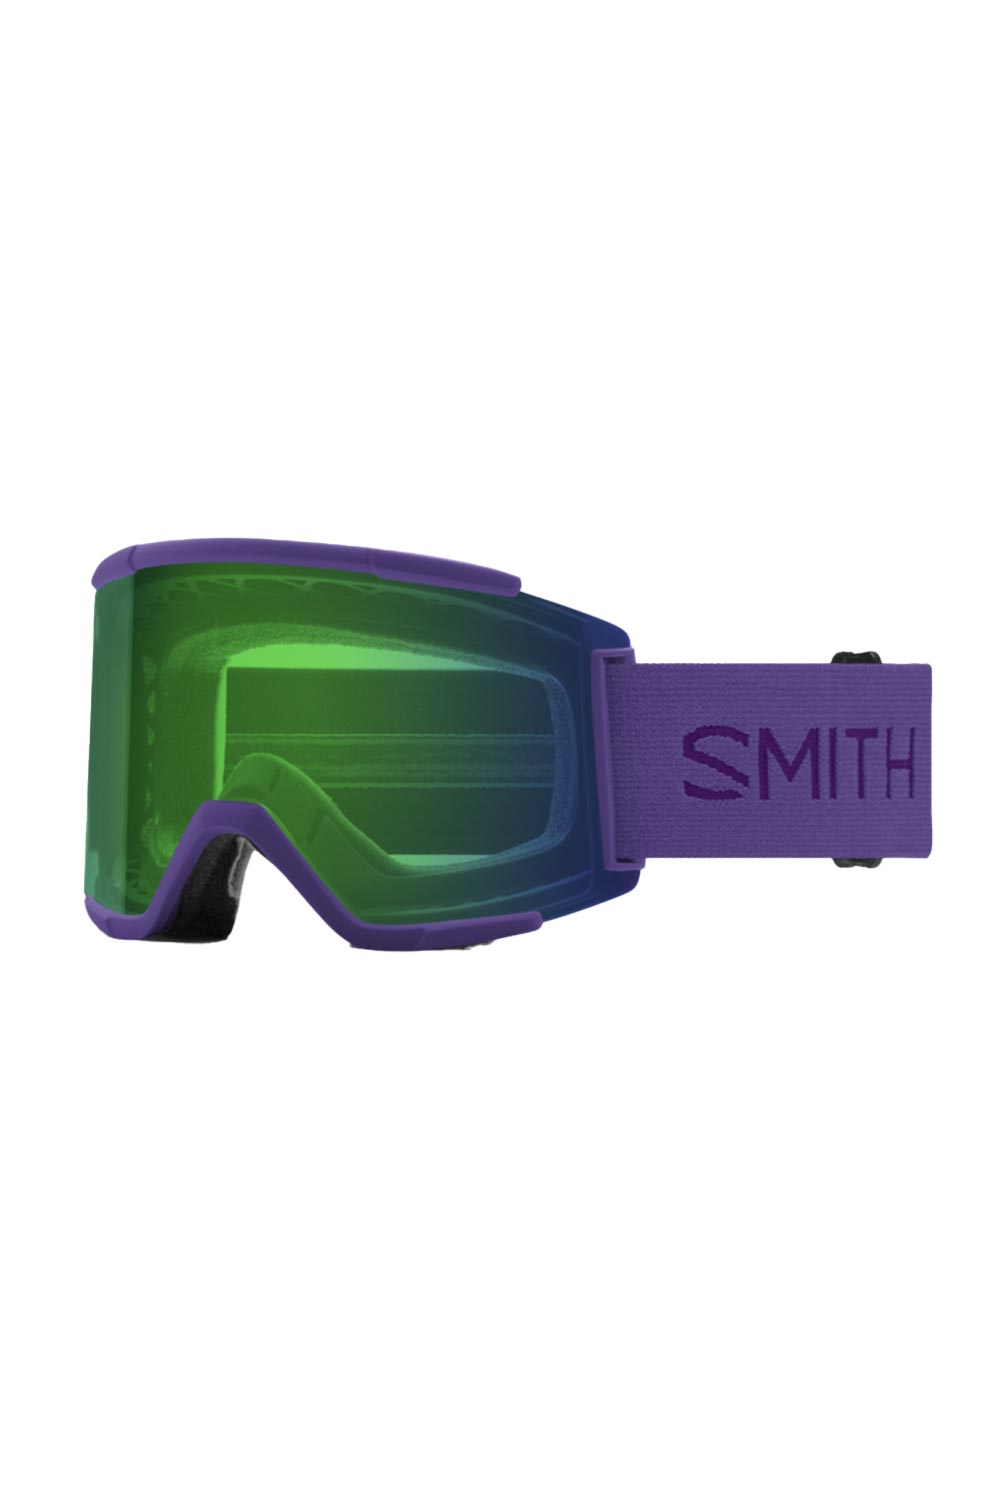 Smith Squad XL ski goggles, purple strap and green lens